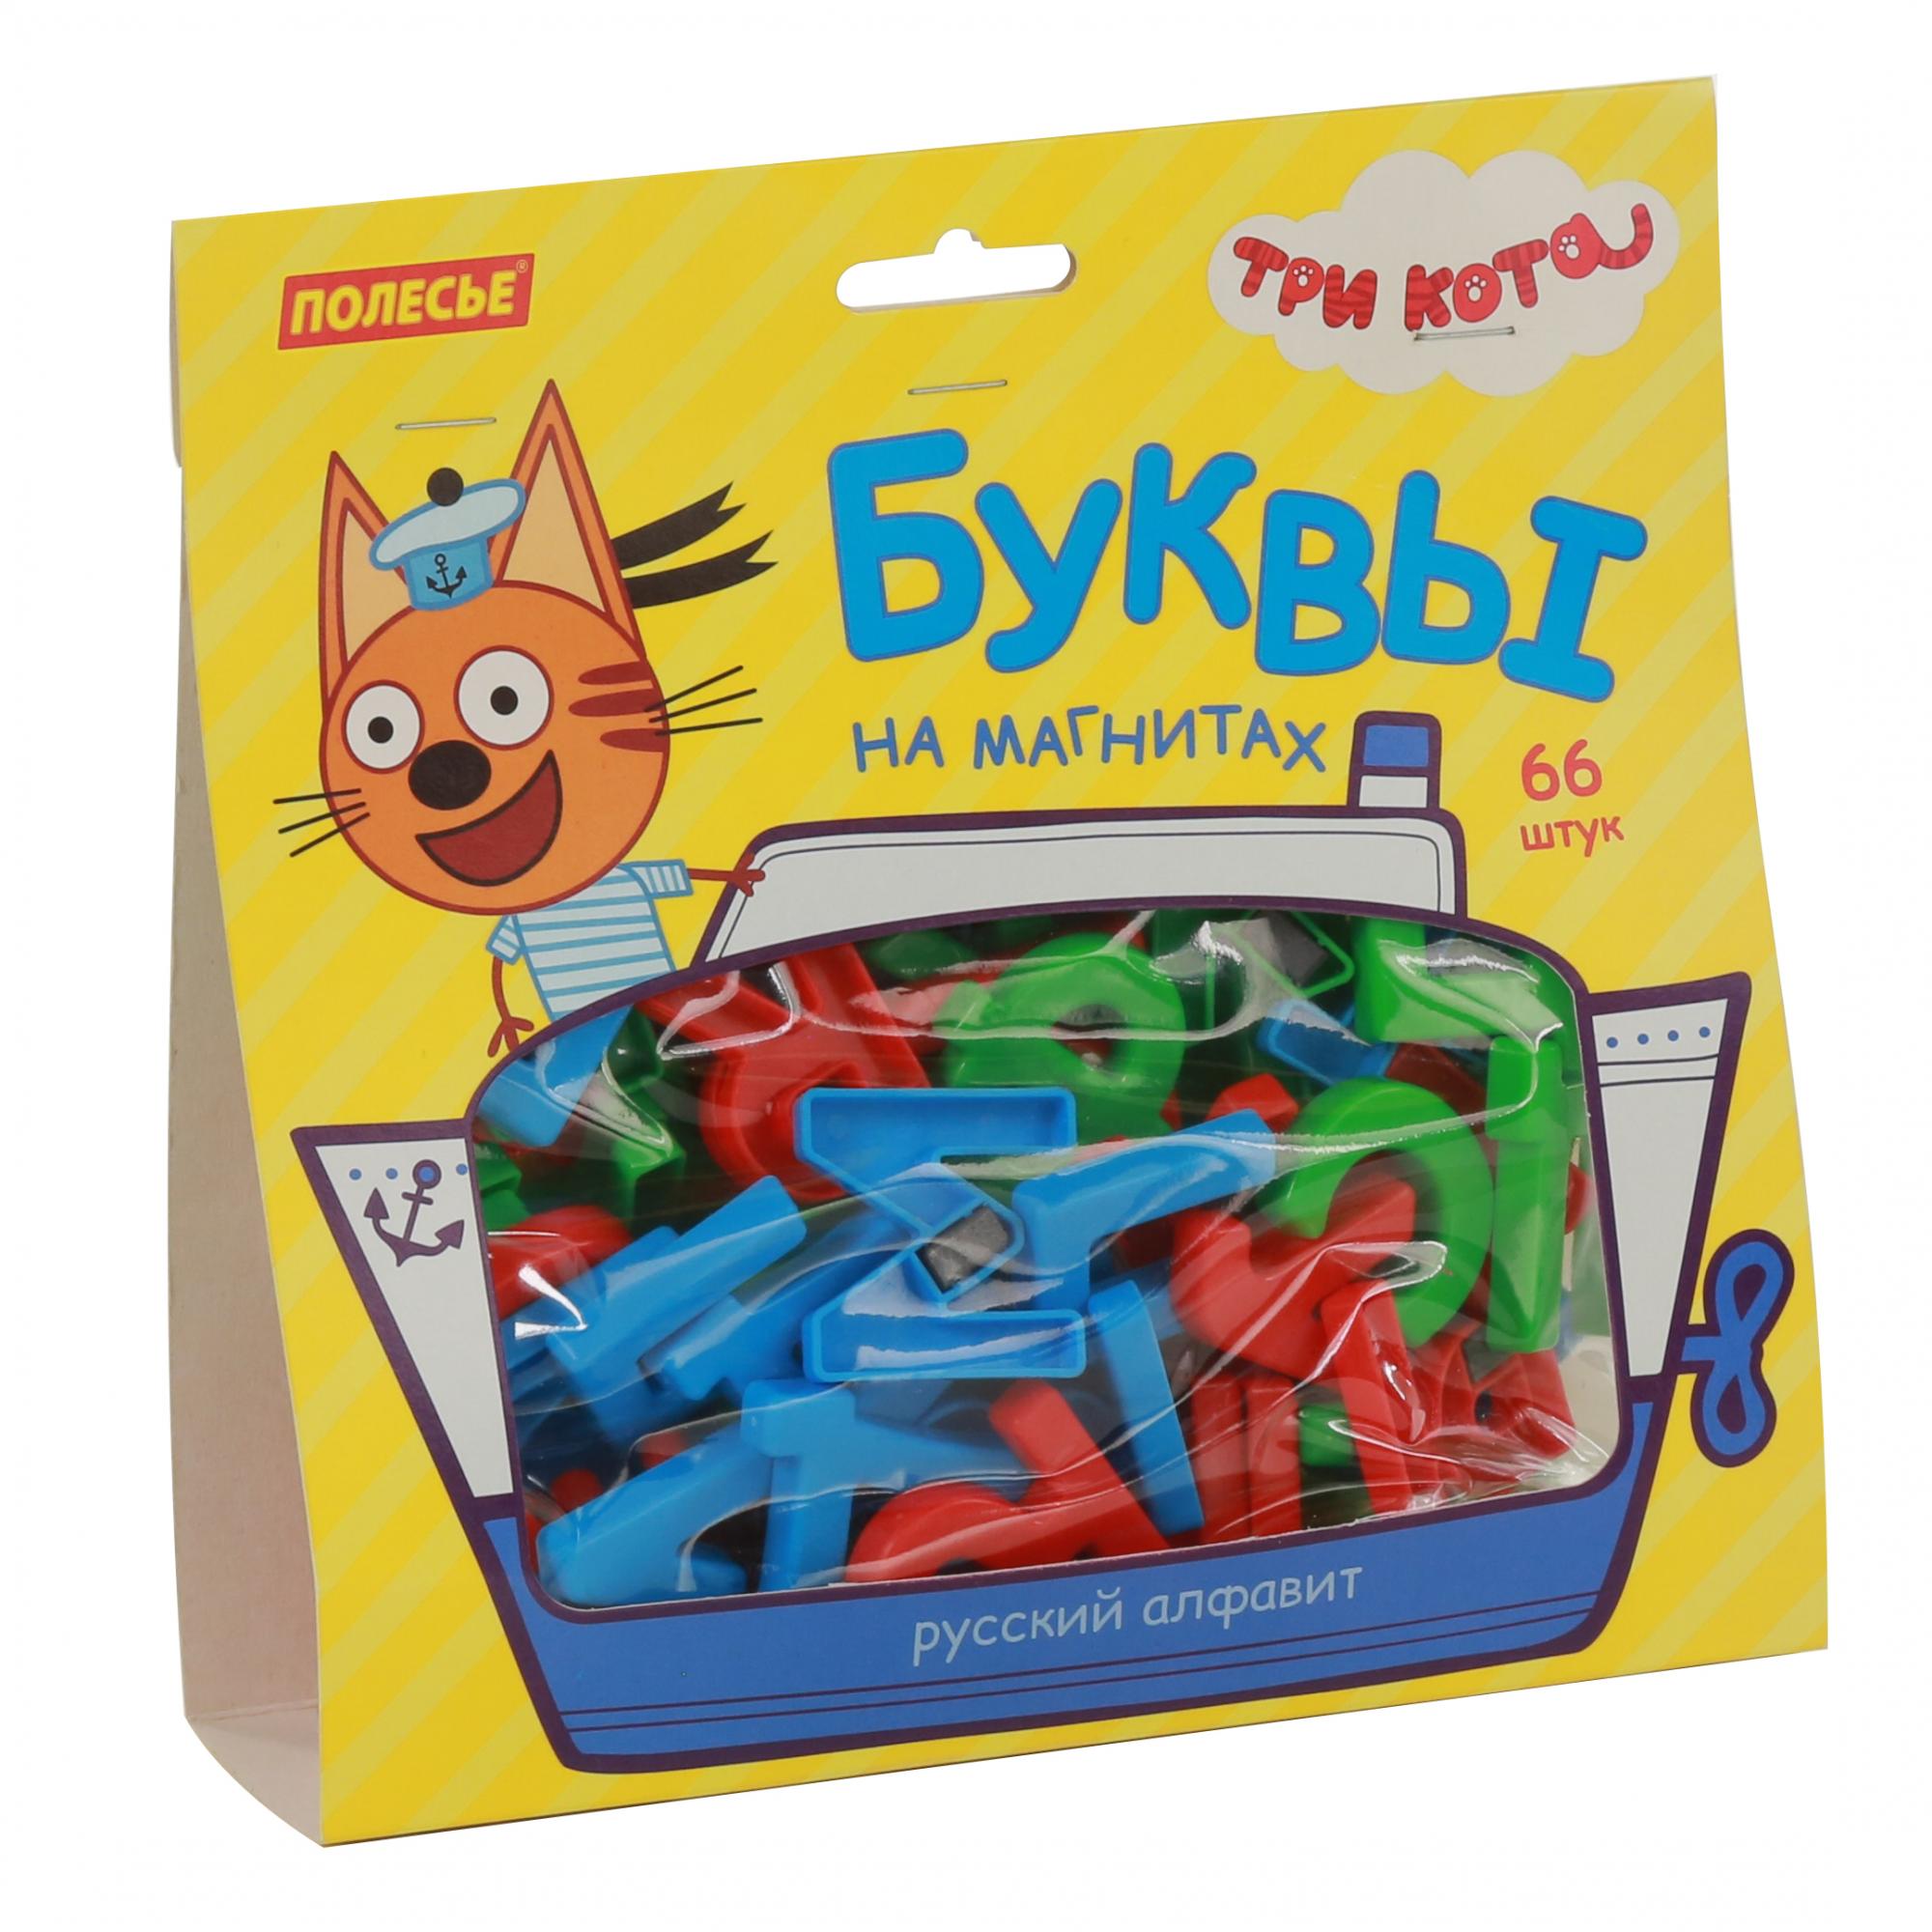 Набор из серии Три кота - Буквы на магнитах, 66 штук, в пакете  